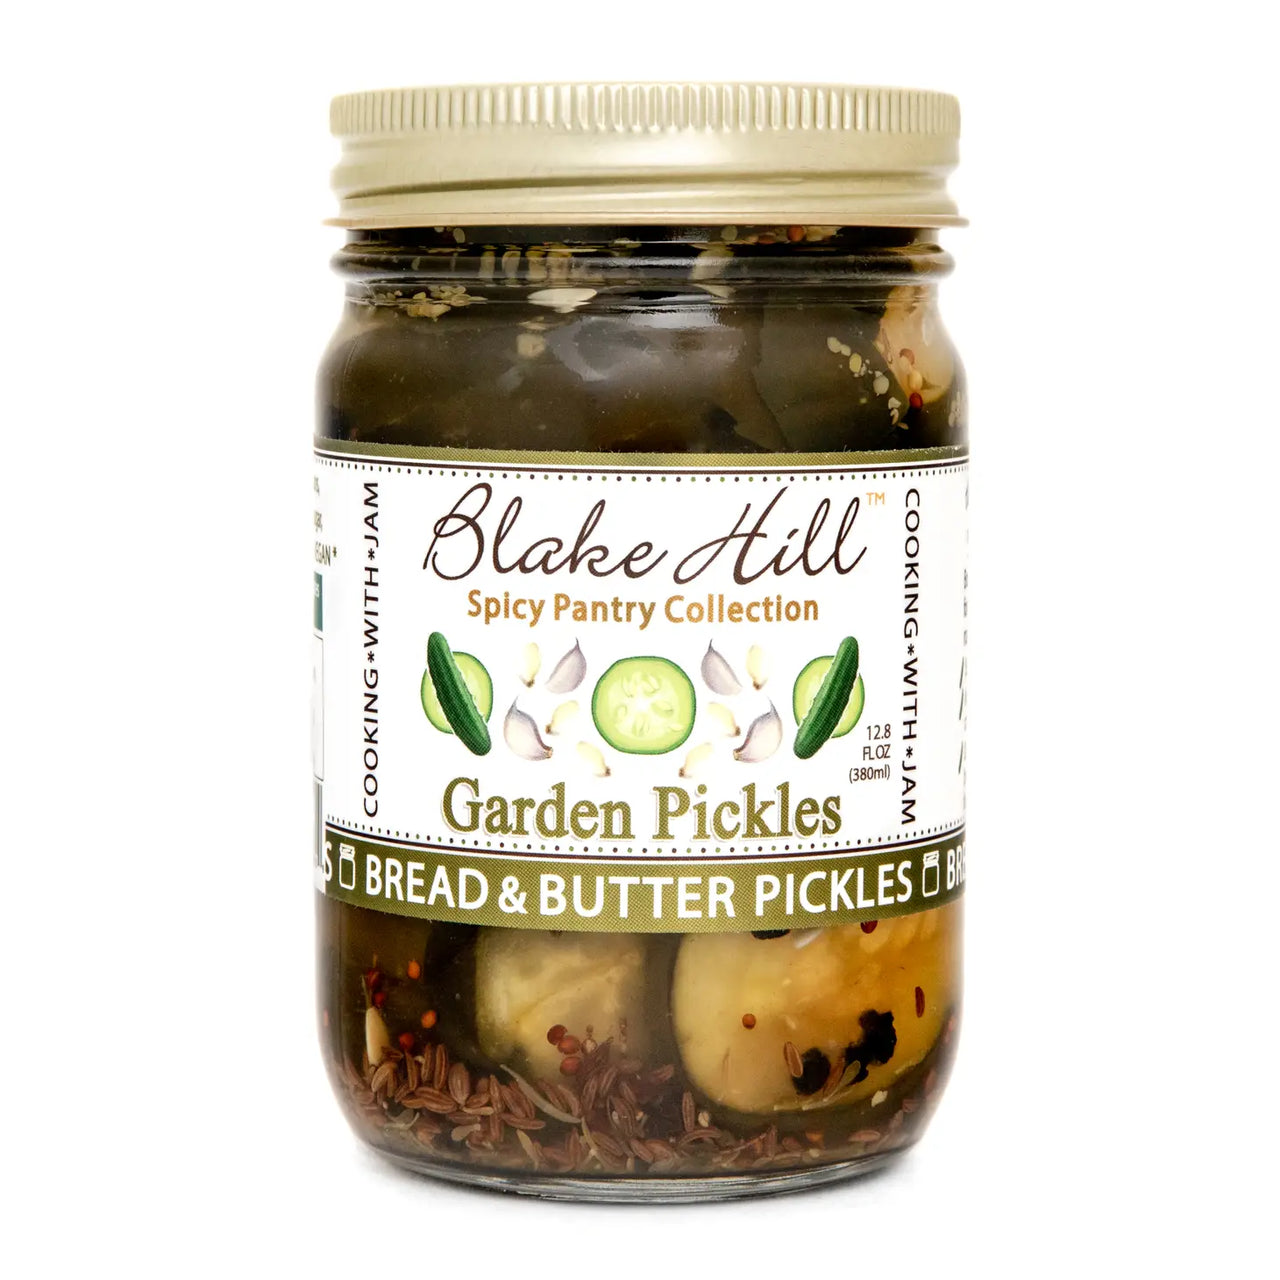 Garden Pickles